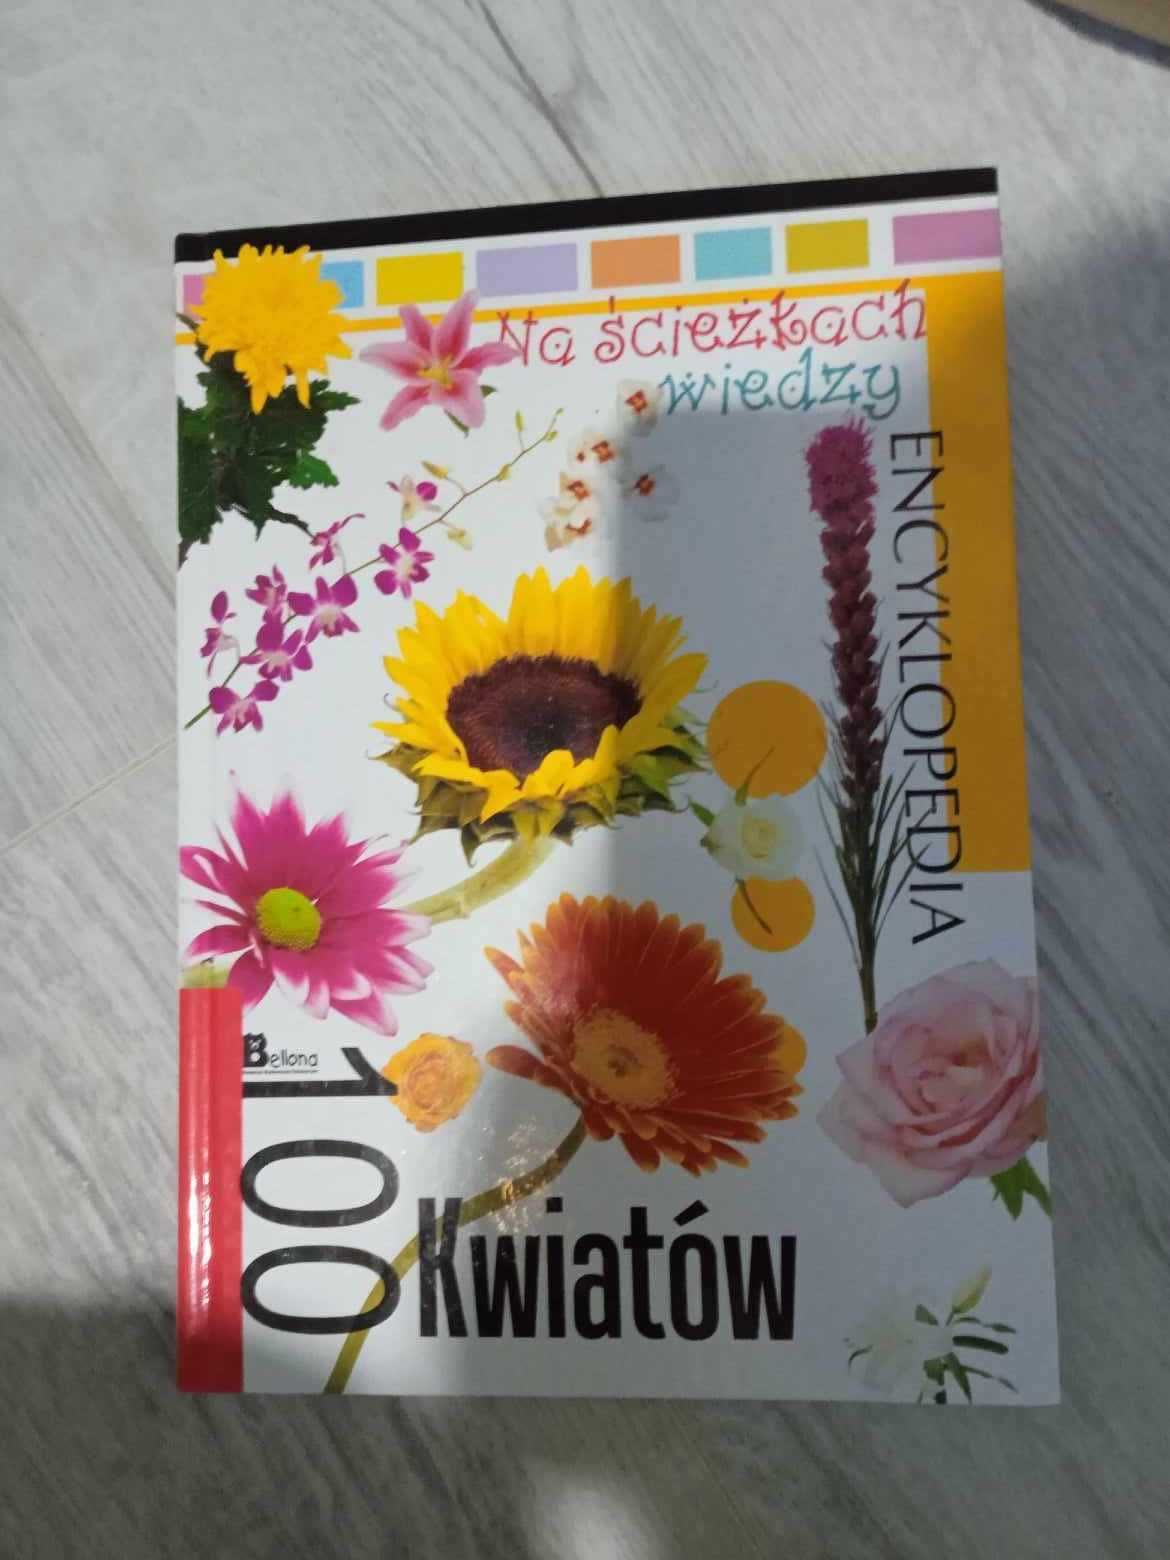 "Na ścieżkach wiedzy" - Encyklopedia 100 kwiatów (wydawnictwo Bellona)